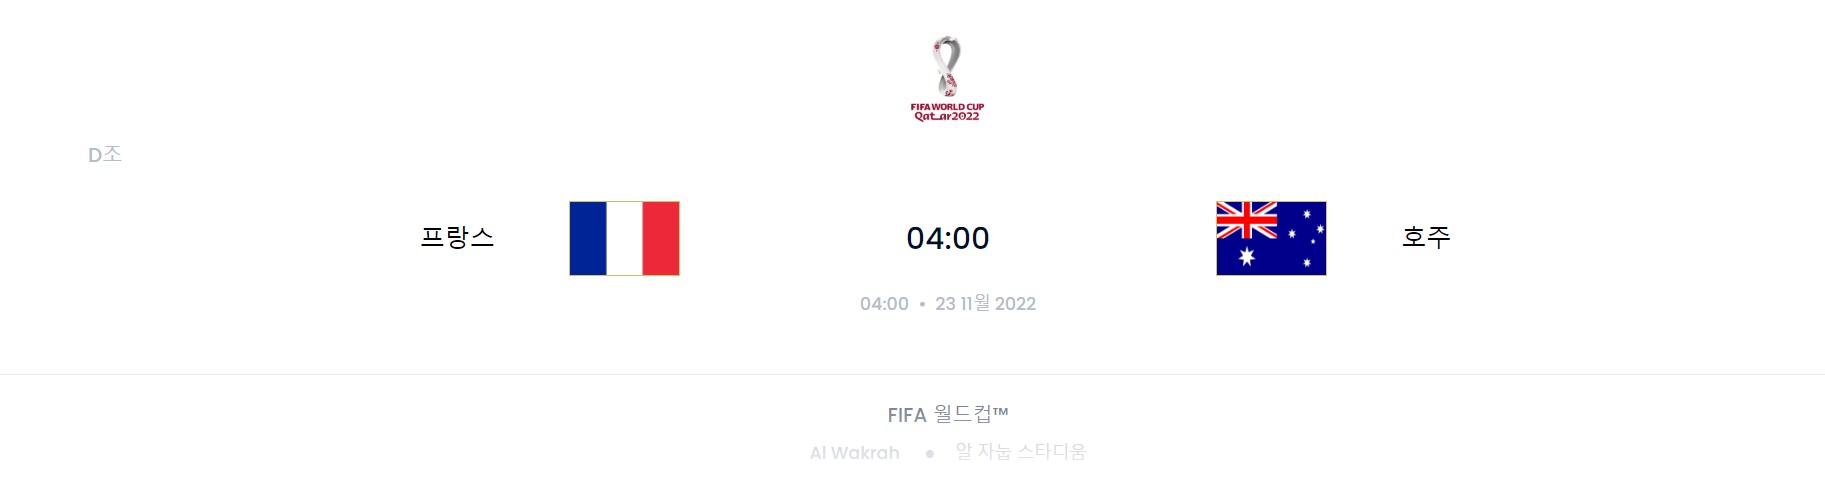 카타르 월드컵 D조 2경기 (프랑스 VS 호주)